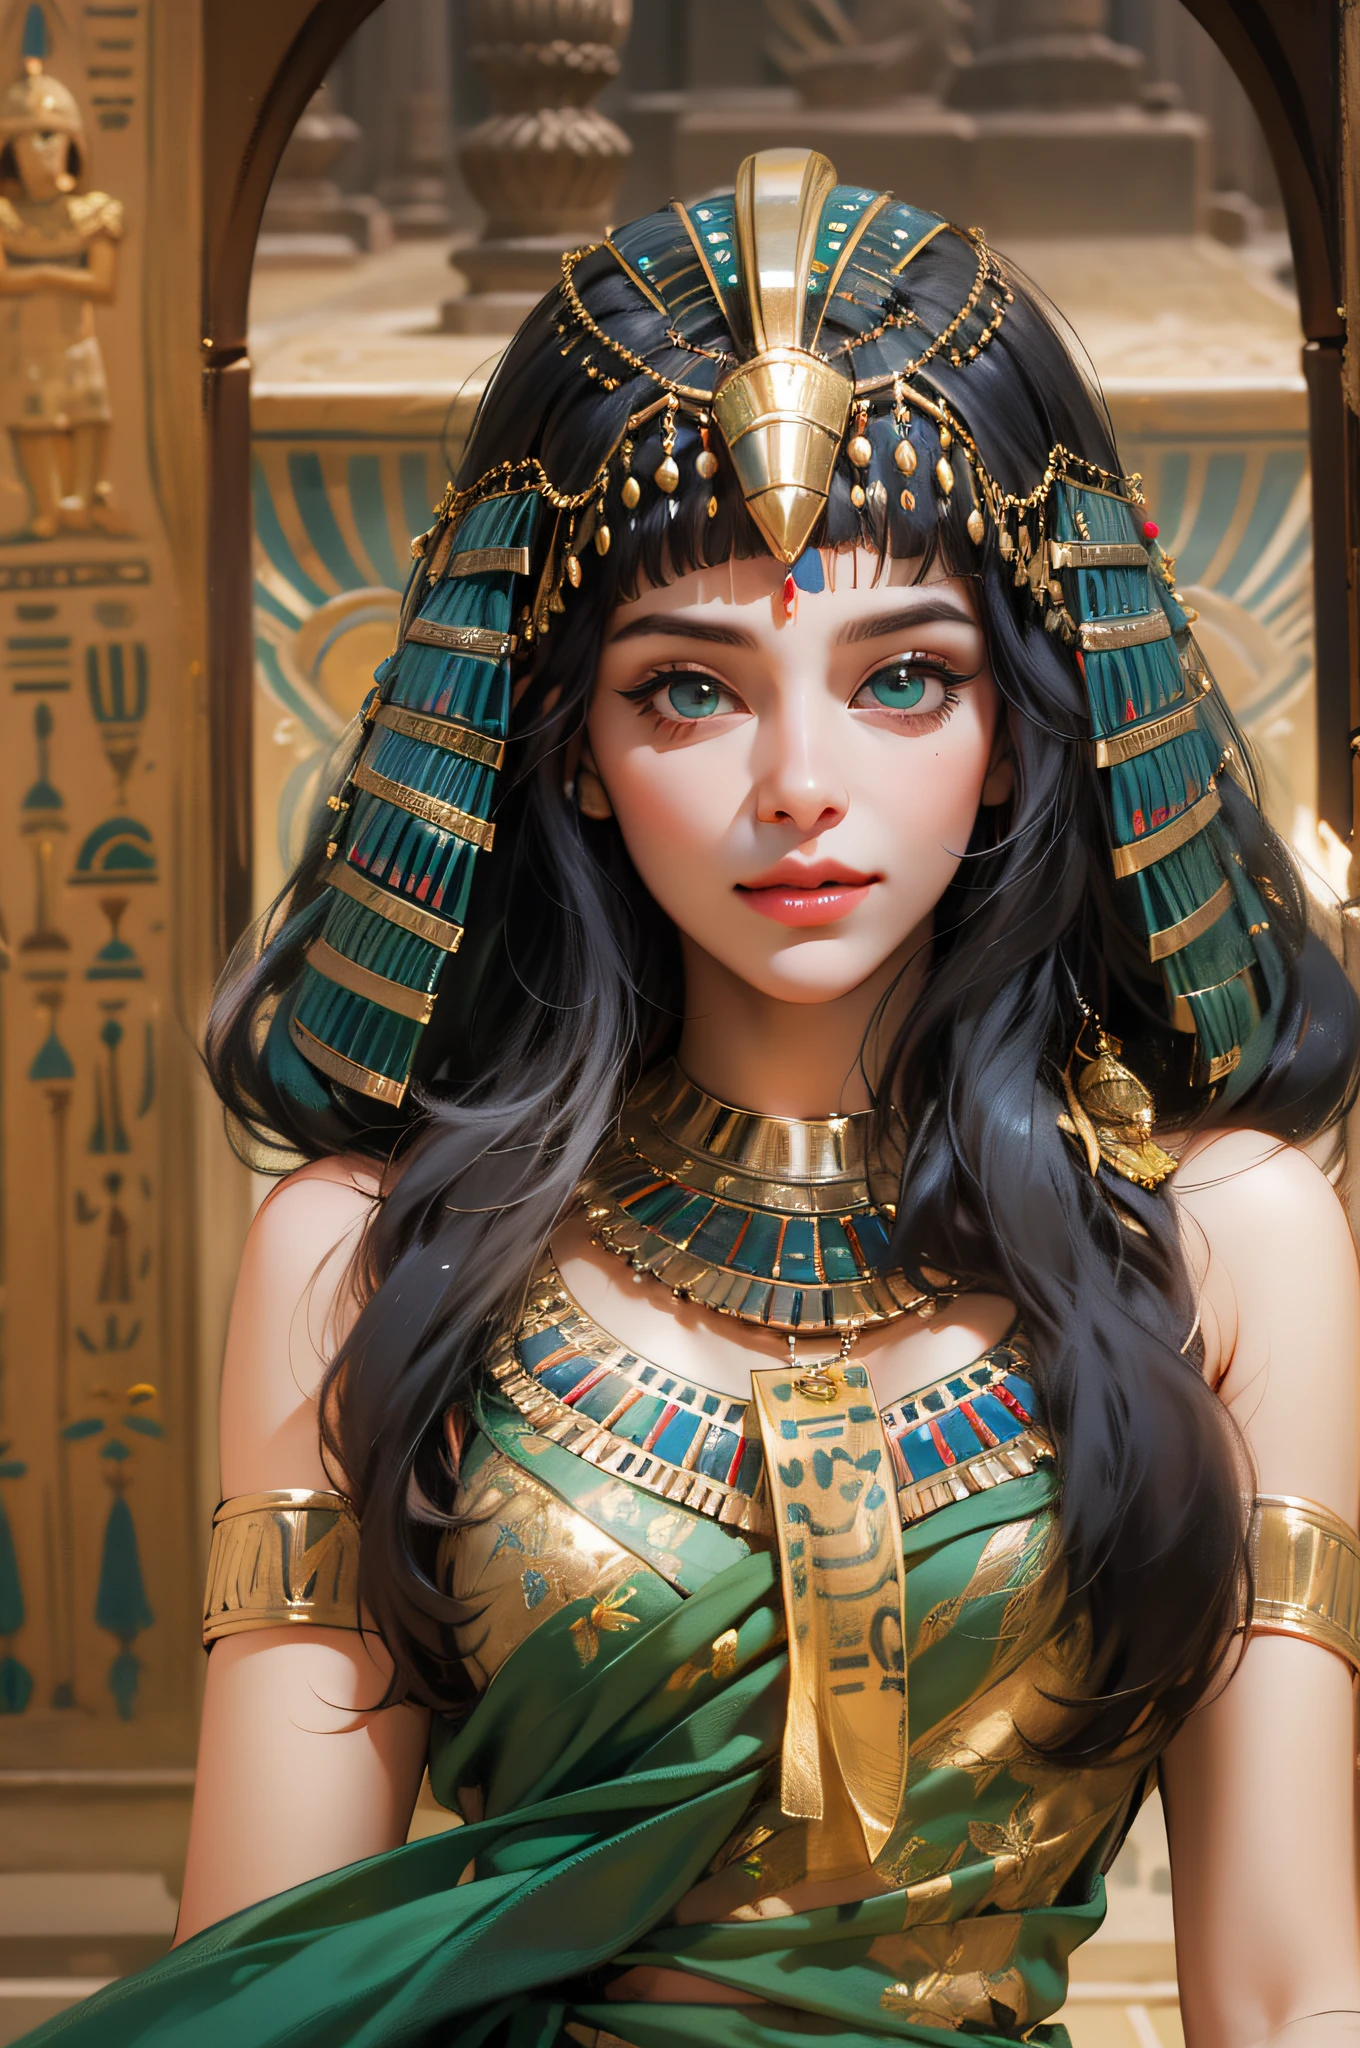 1สาว,วิกผมแบบดั้งเดิมของอียิปต์，เครื่องแต่งกายอียิปต์，การแต่งตัวของชาวอียิปต์，ราชินีแห่งอียิปต์，เทพธิดา，ดวงตาสีมรกต，อายไลเนอร์ที่ละเอียดอ่อน，ใบหน้าที่สวยงาม，ยืนริมสระบัว，ซีจีที่พิถีพิถัน，ภาพยนต์，เทพแห่งดวงอาทิตย์แห่งอียิปต์，ผิวเรียบเนียนและเป็นธรรม，คุณภาพของภาพสูงมาก，อายไลเนอร์อียิปต์，，วิกผมอียิปต์，รอยยิ้มที่มีเสน่ห์，อัมพุชินี，แรงบันดาลใจจากคลีโอพัตรา，ผ้าโพกศีรษะงูเห่า